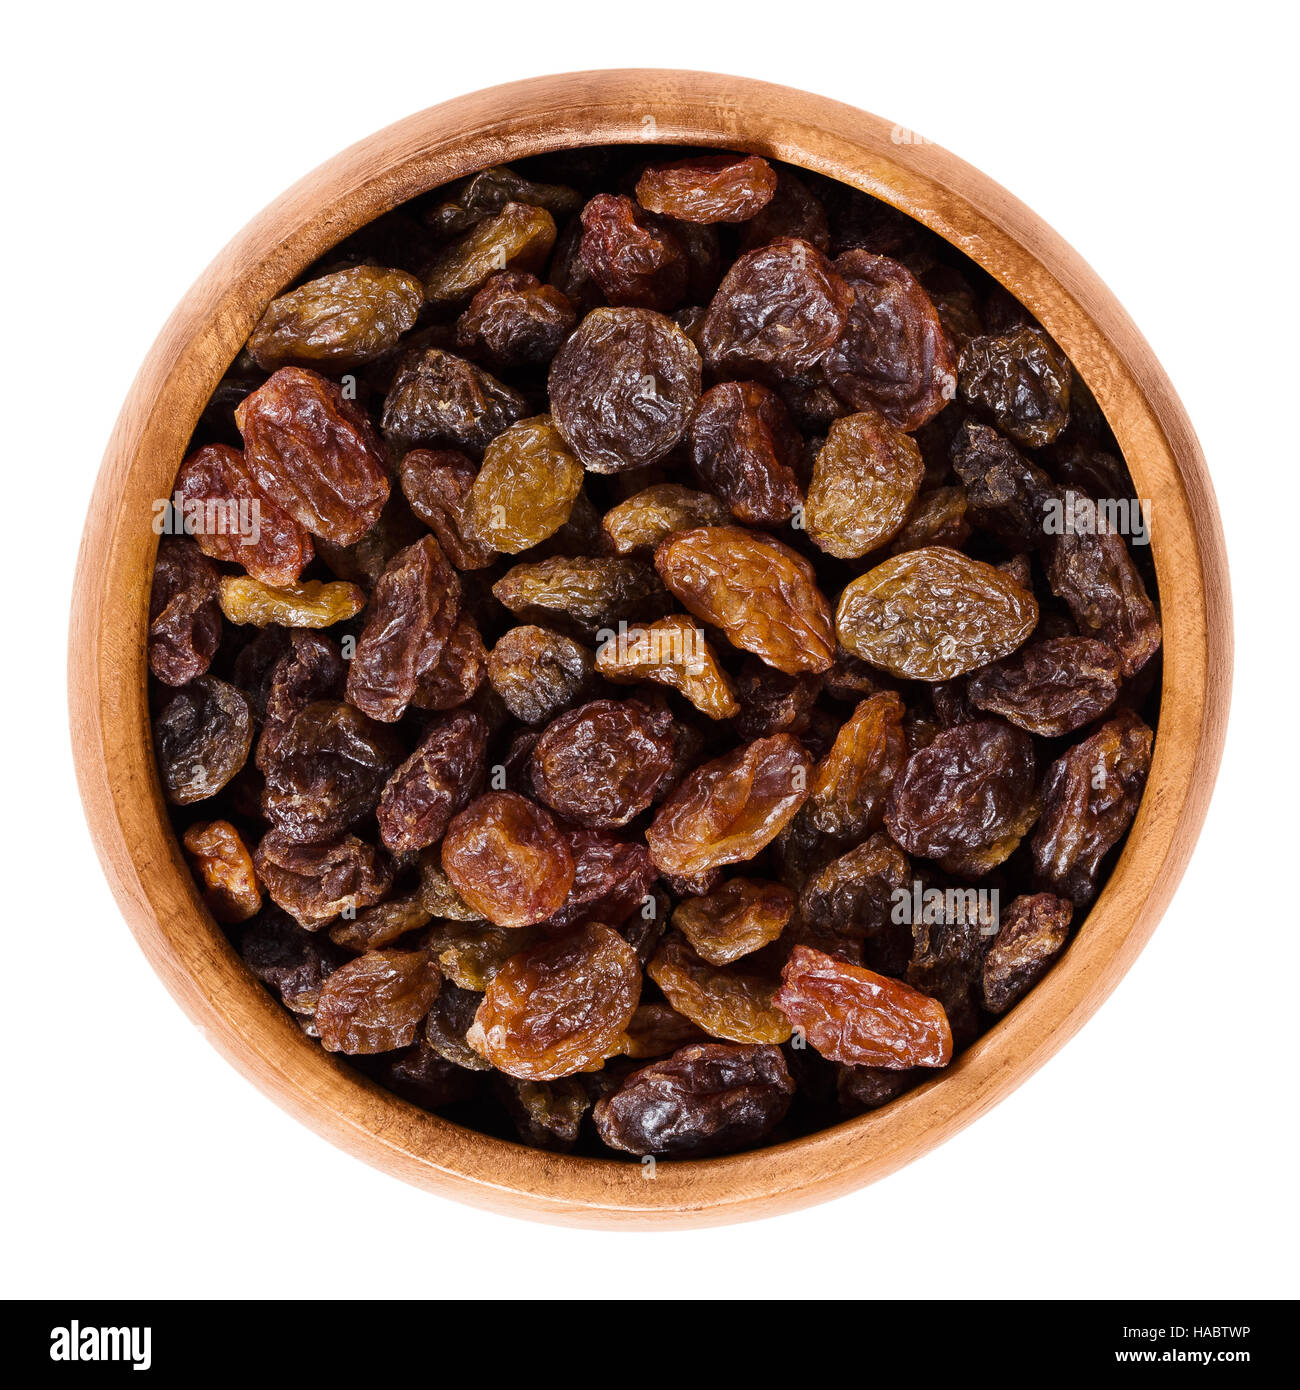 Les raisins secs dans un bol en bois de couleur brun foncé, faites de grands raisins. Fruits sans pépins séchés comestibles, organiques et de matières premières. Banque D'Images